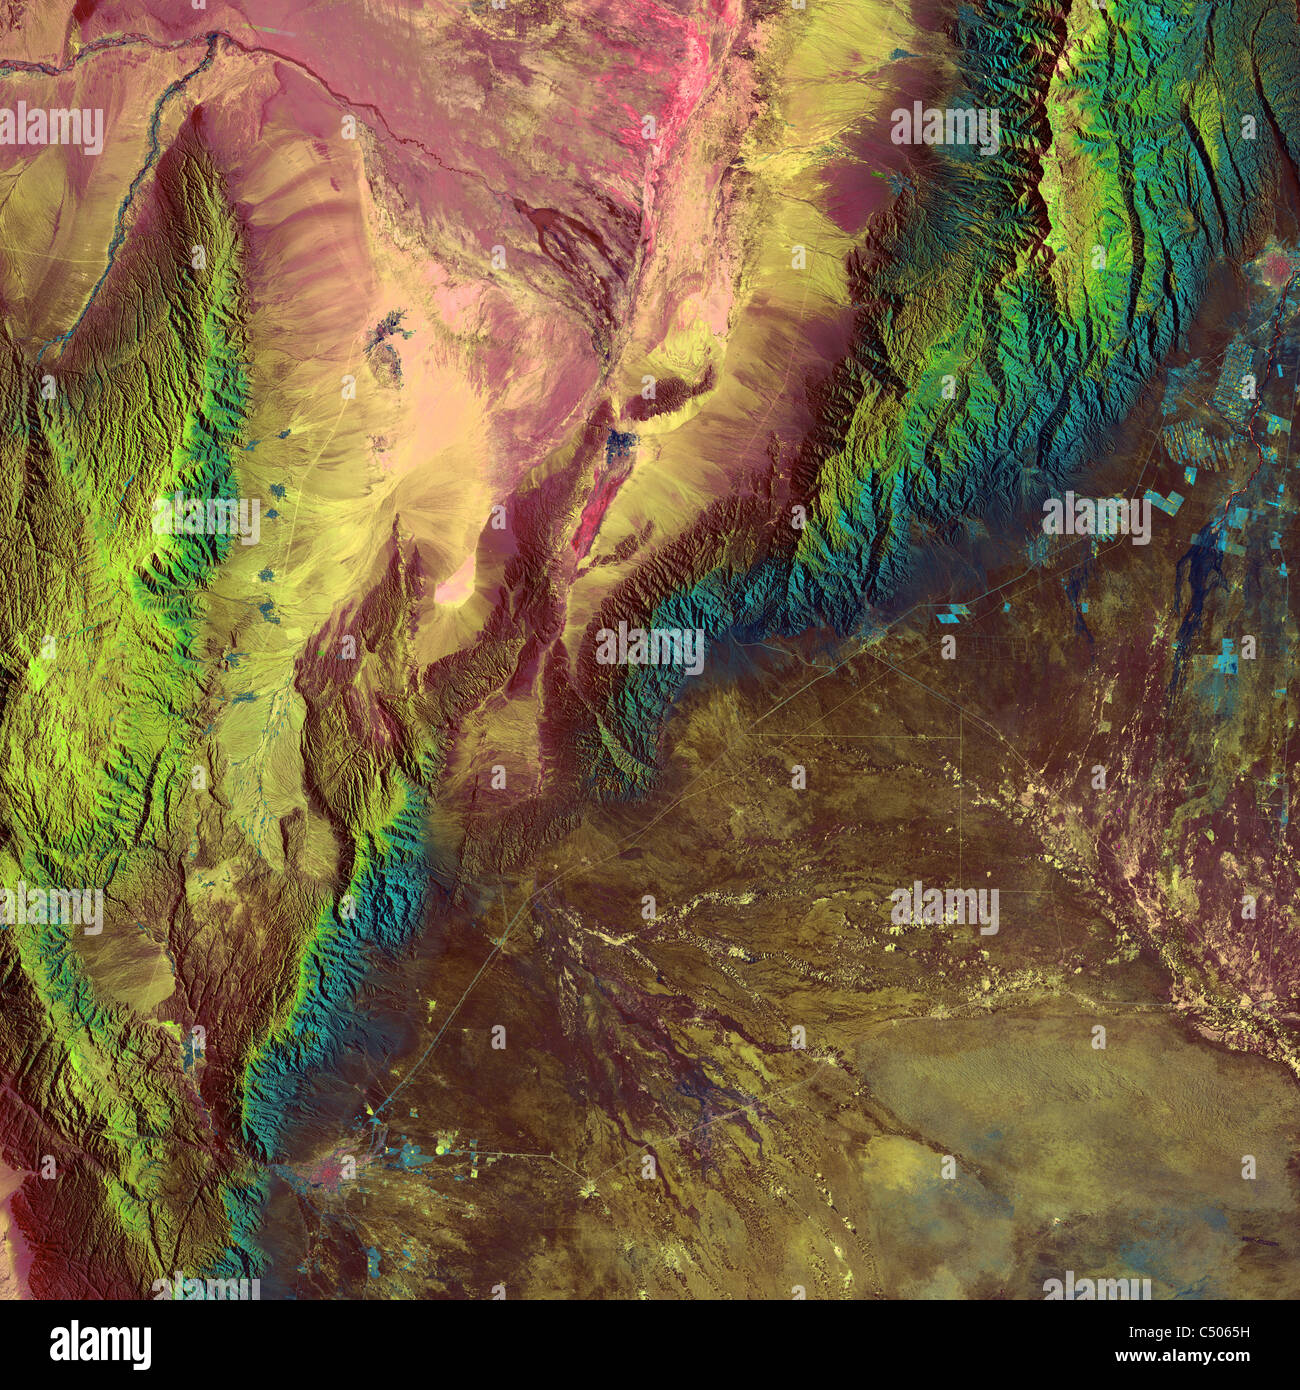 Argentina della Sierra de Velasco Mountains come dallo spazio in questo NASA immagine satellitare. Foto Stock